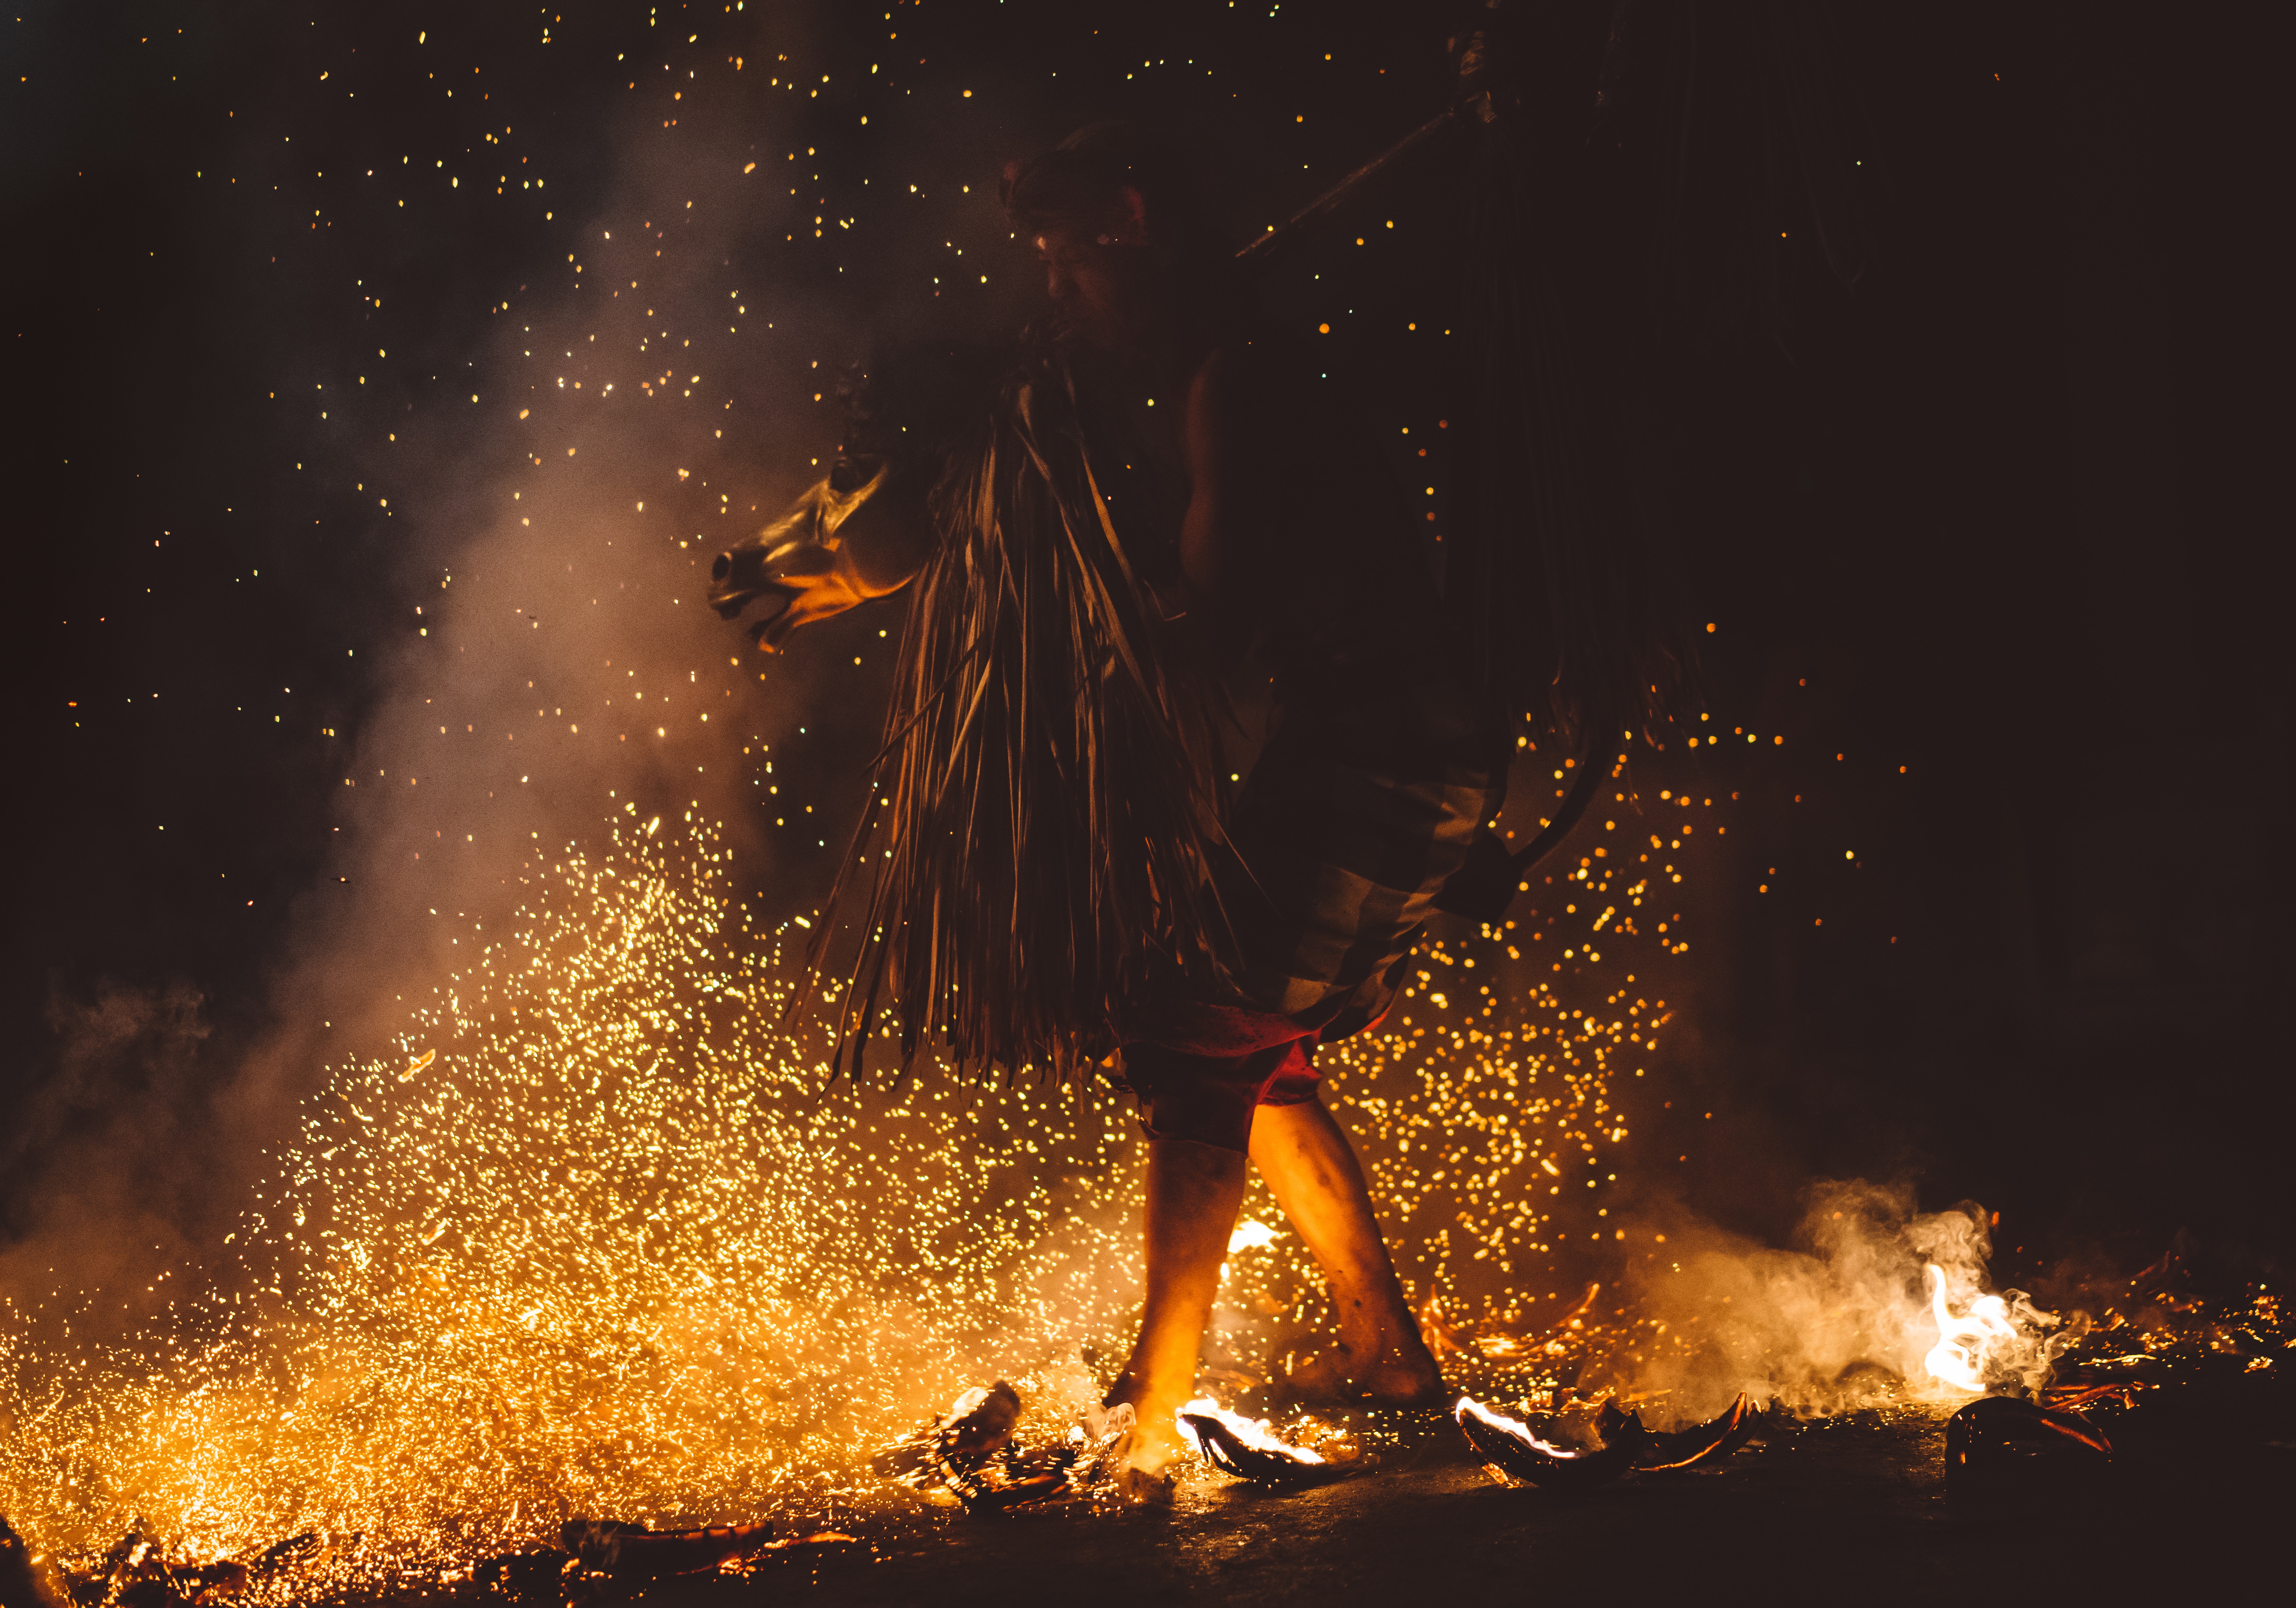 A shaman dances in a fire